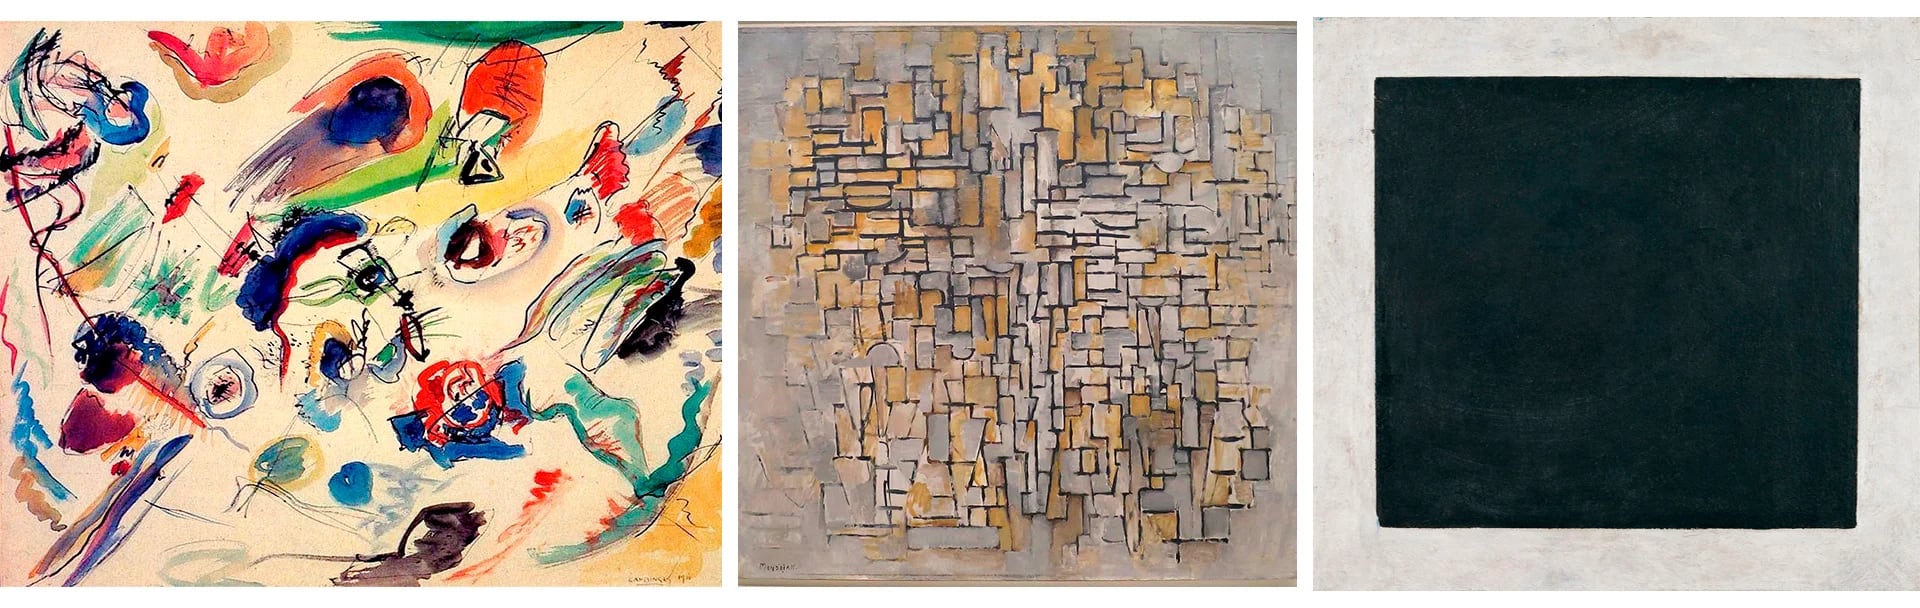 "Sin título", de Kandinsky (1910); "Composición VII" de Mondrian (1913) y "Cuadrado negro", de Malevich (1915)